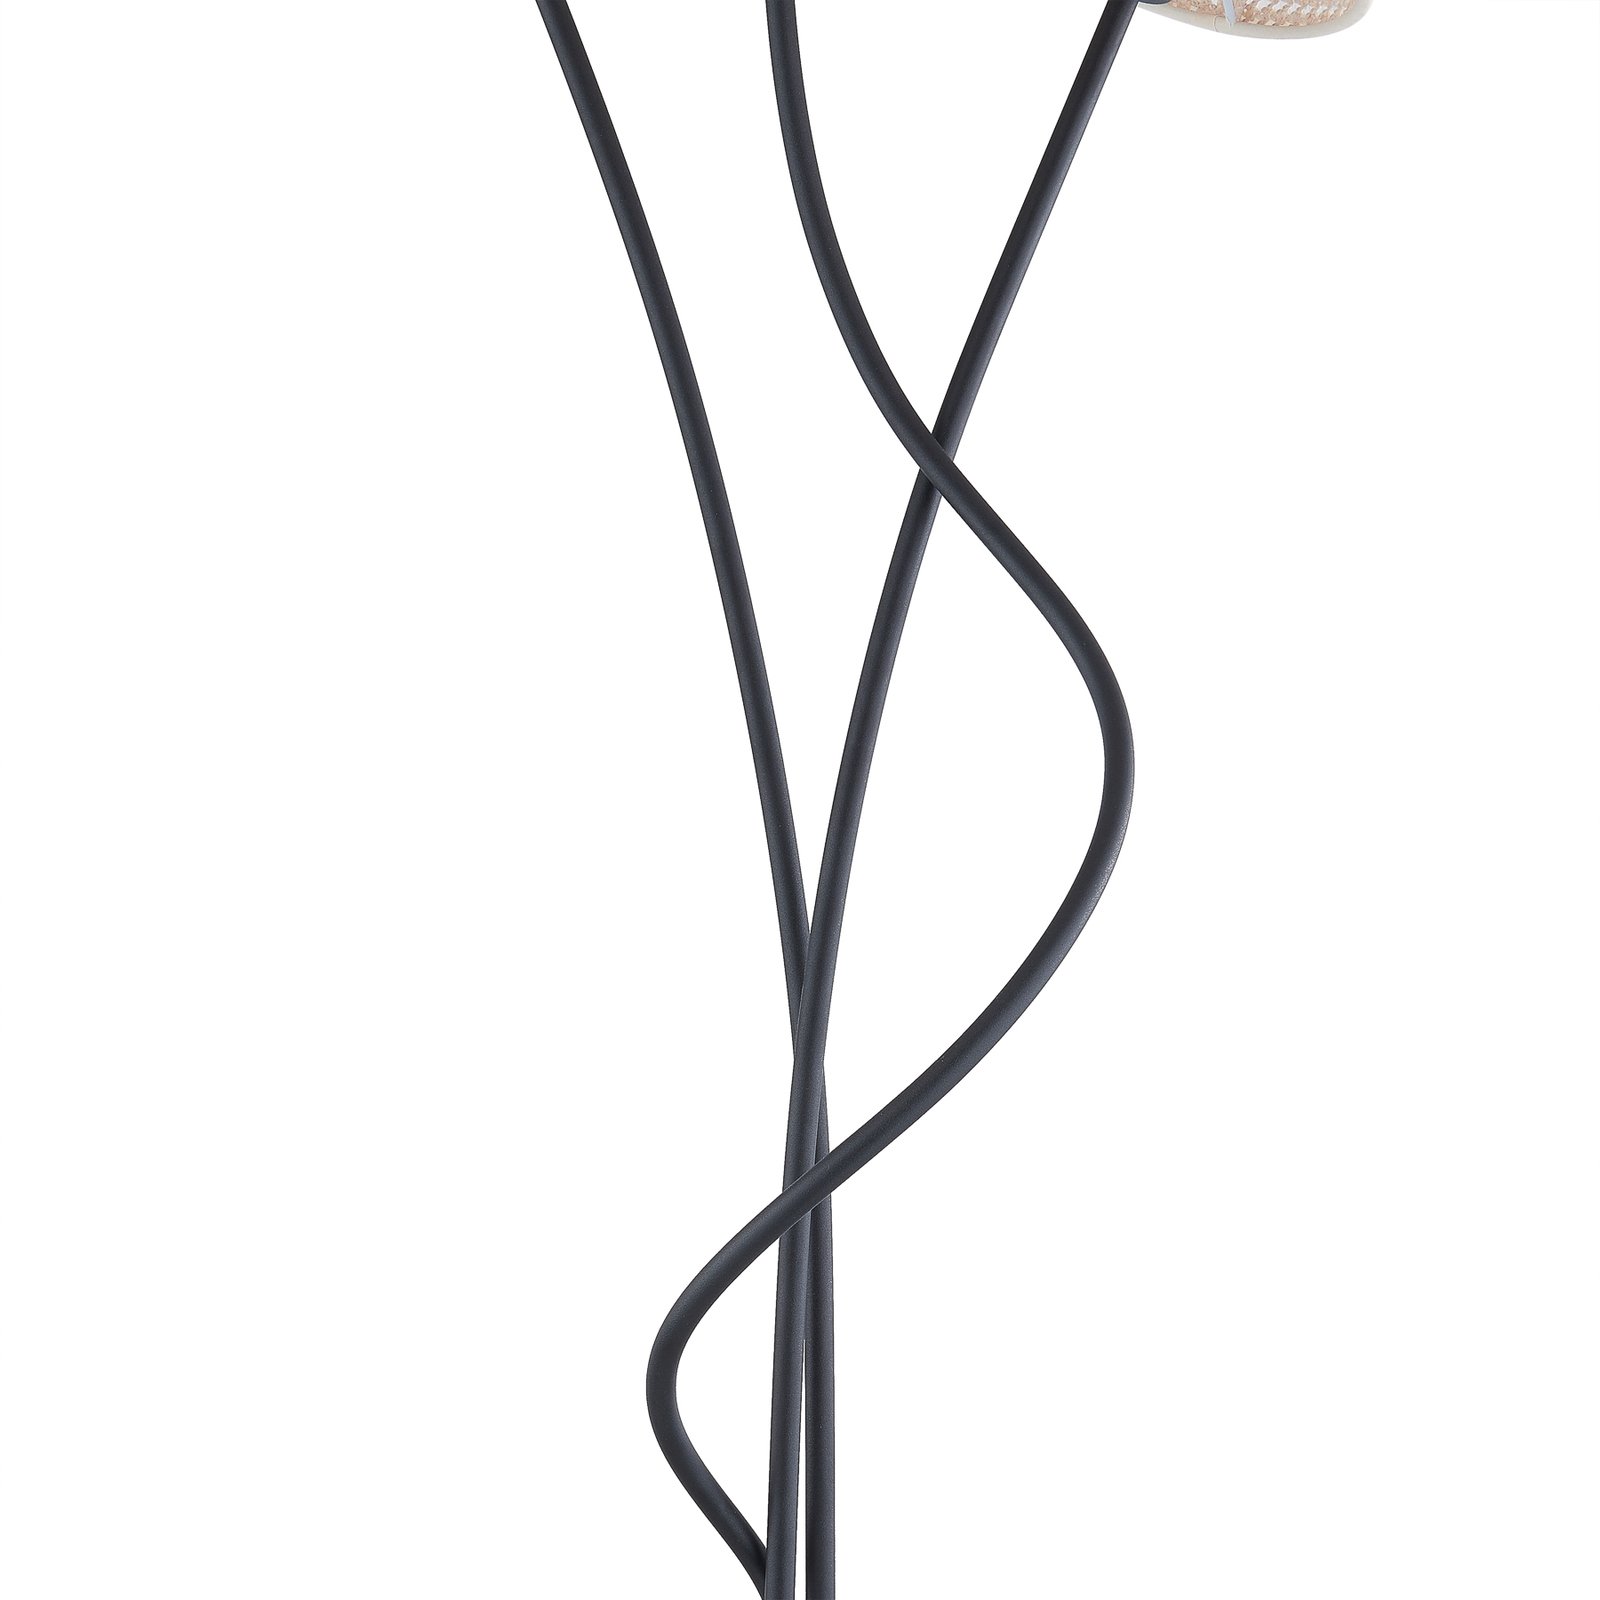 Stojacia lampa Lindby Torvy, čierna/biela, kov, 165 cm, E14